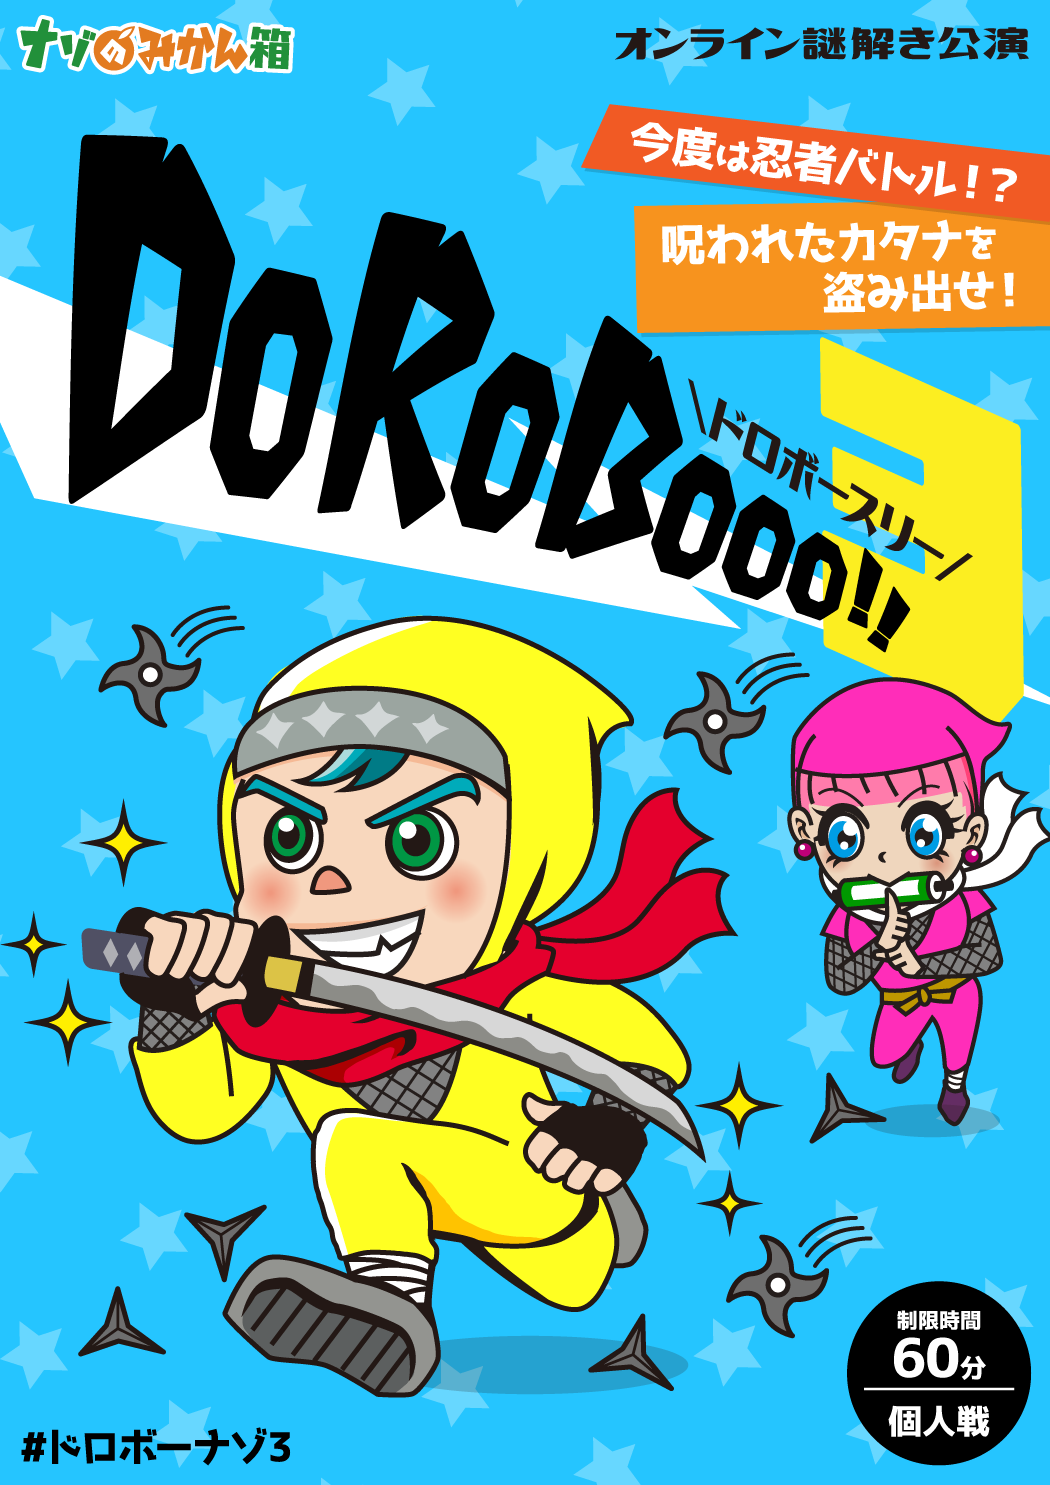 ナゾのみかん箱『DoRoBooo!!3』【アドベンチャーオンライン謎解きゲーム】